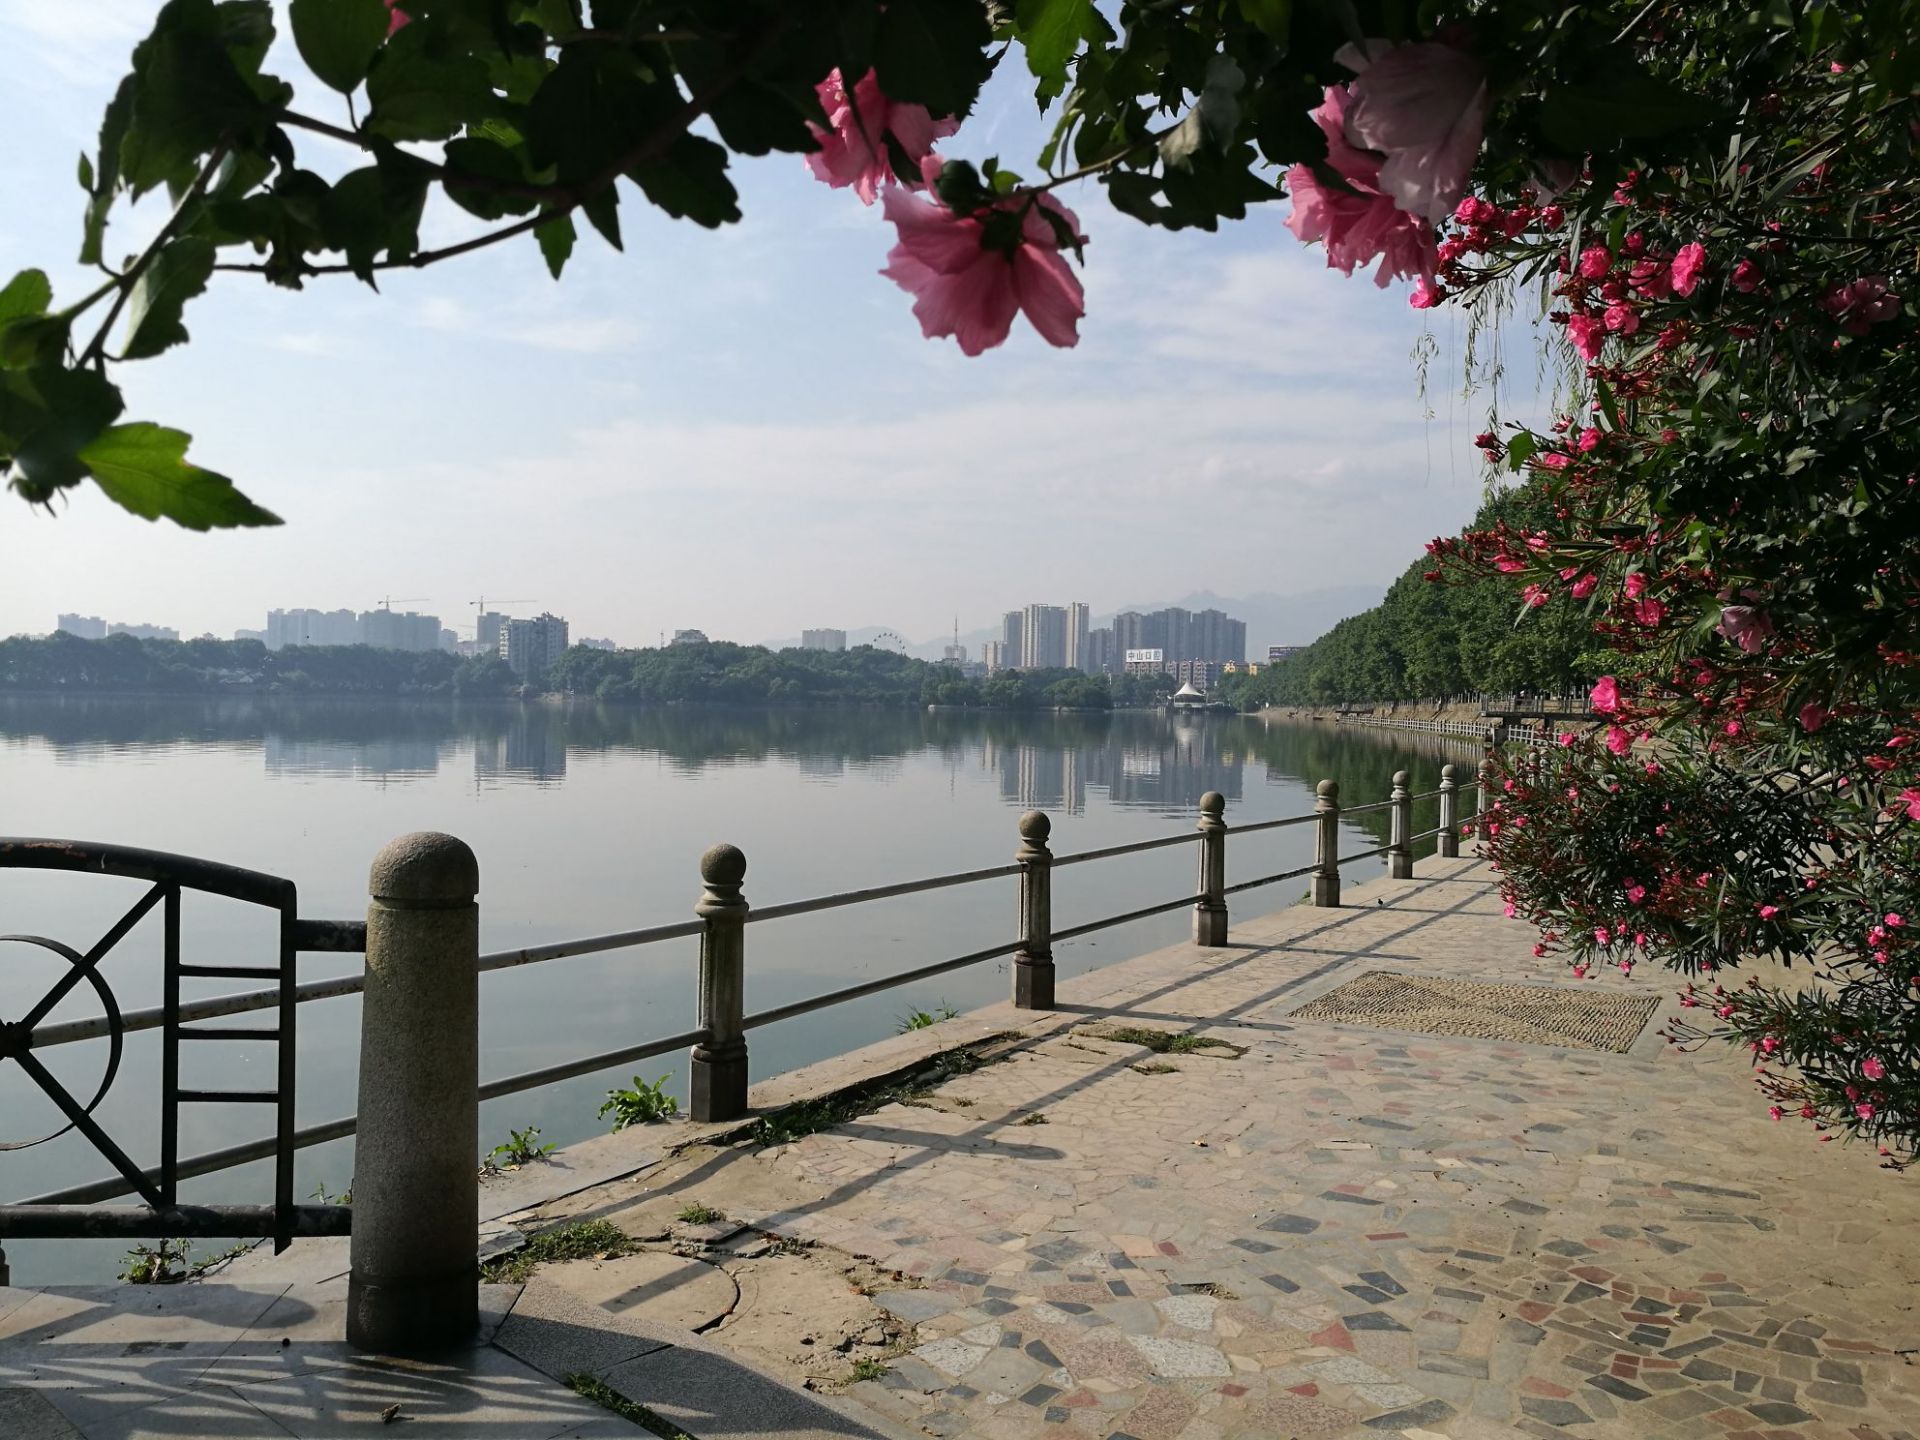 九江甘棠湖，离长江很近，原来是通长江的。历史上这里是水师驻地，周瑜在此点过将。 环湖一周都有步道，是